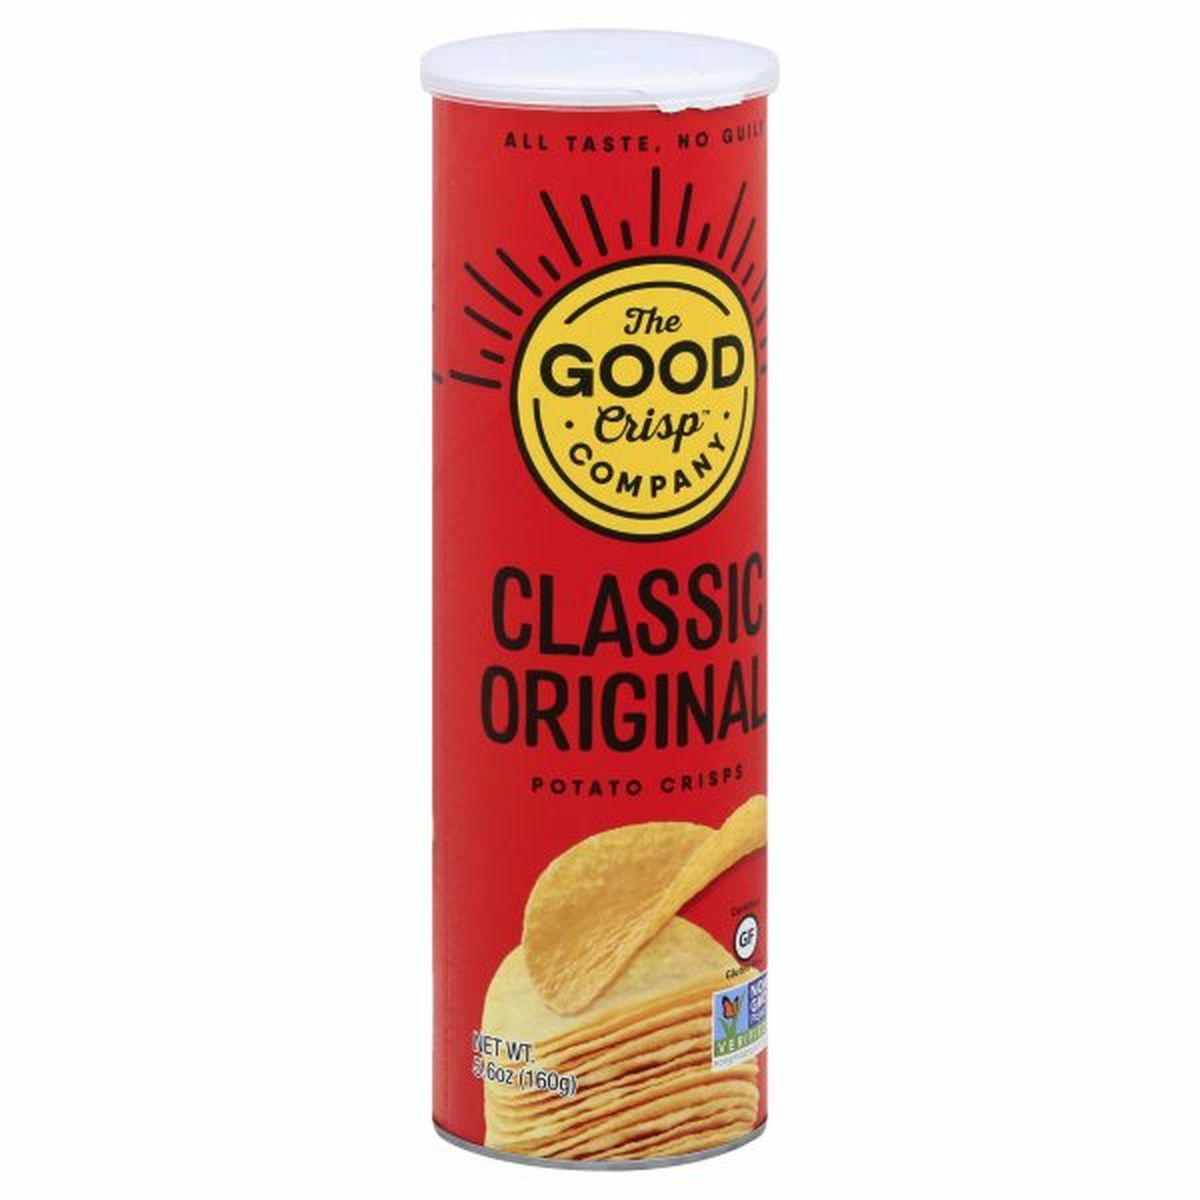 Calories in The Good Crisp Company Potato Crisps, Classic Original